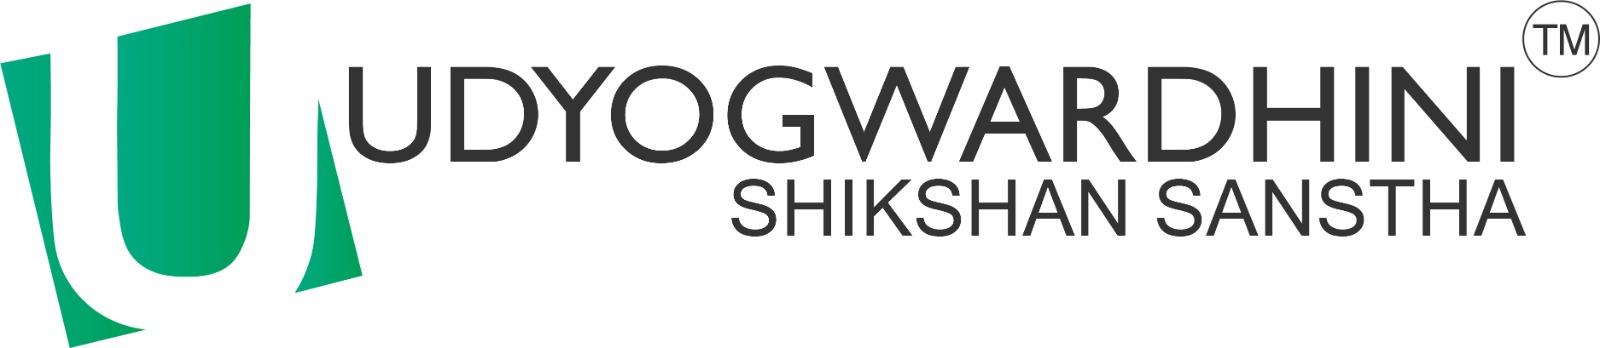 Udyogwardhini Shikshan Santha logo